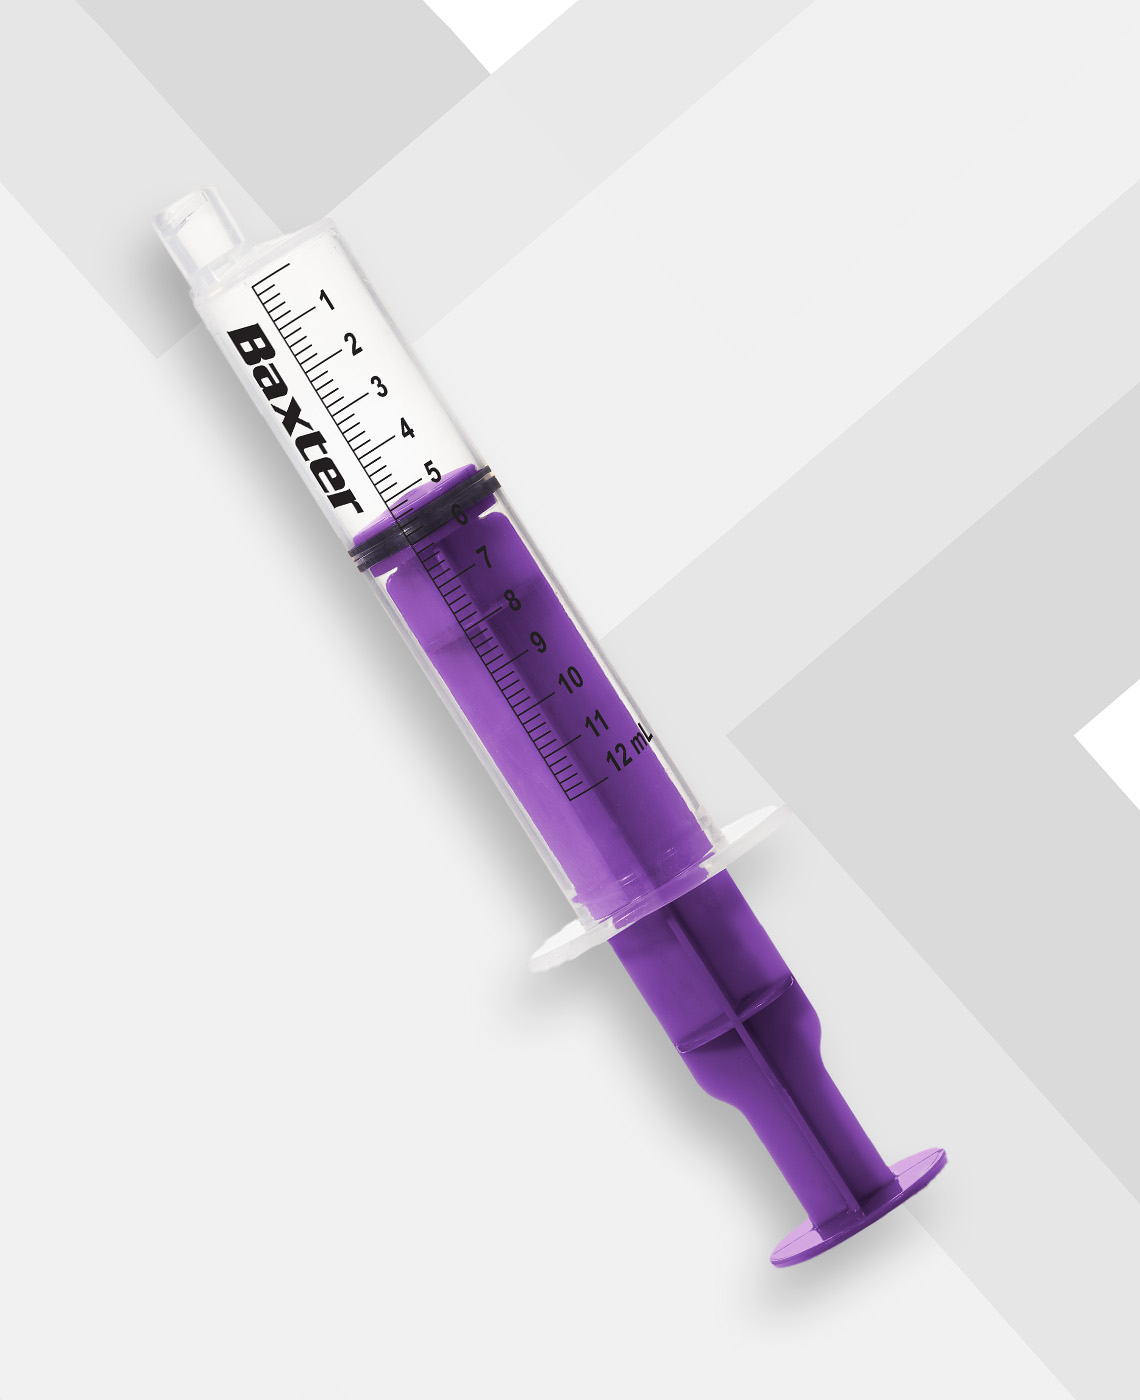 Close up shot of purple syringe